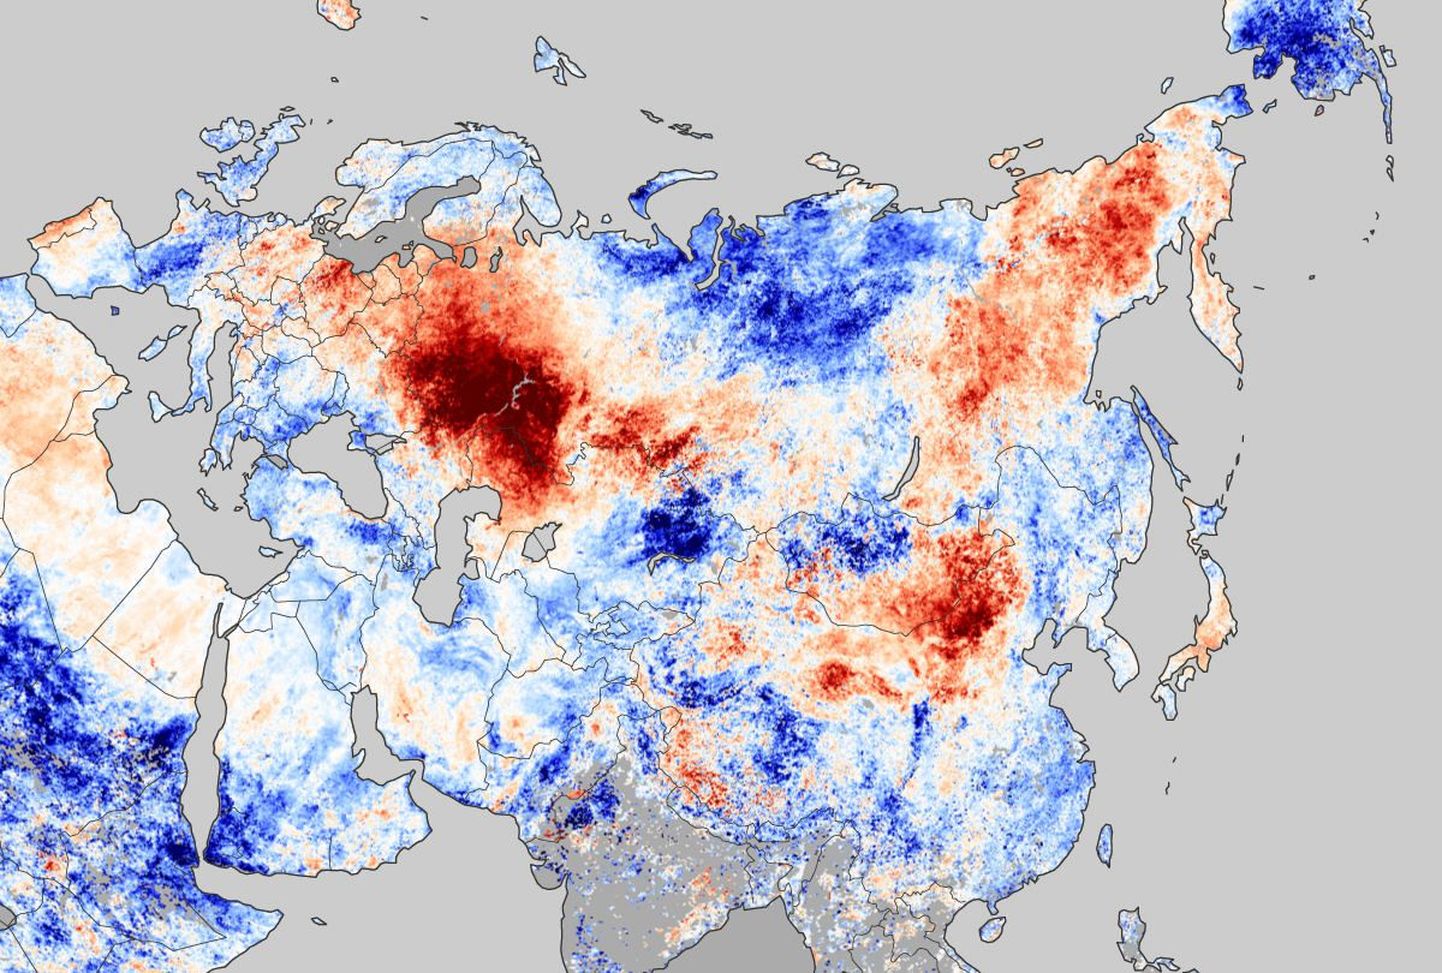 Метеокарта Евроазии с очагами жаркого воздуха на территории Росиии